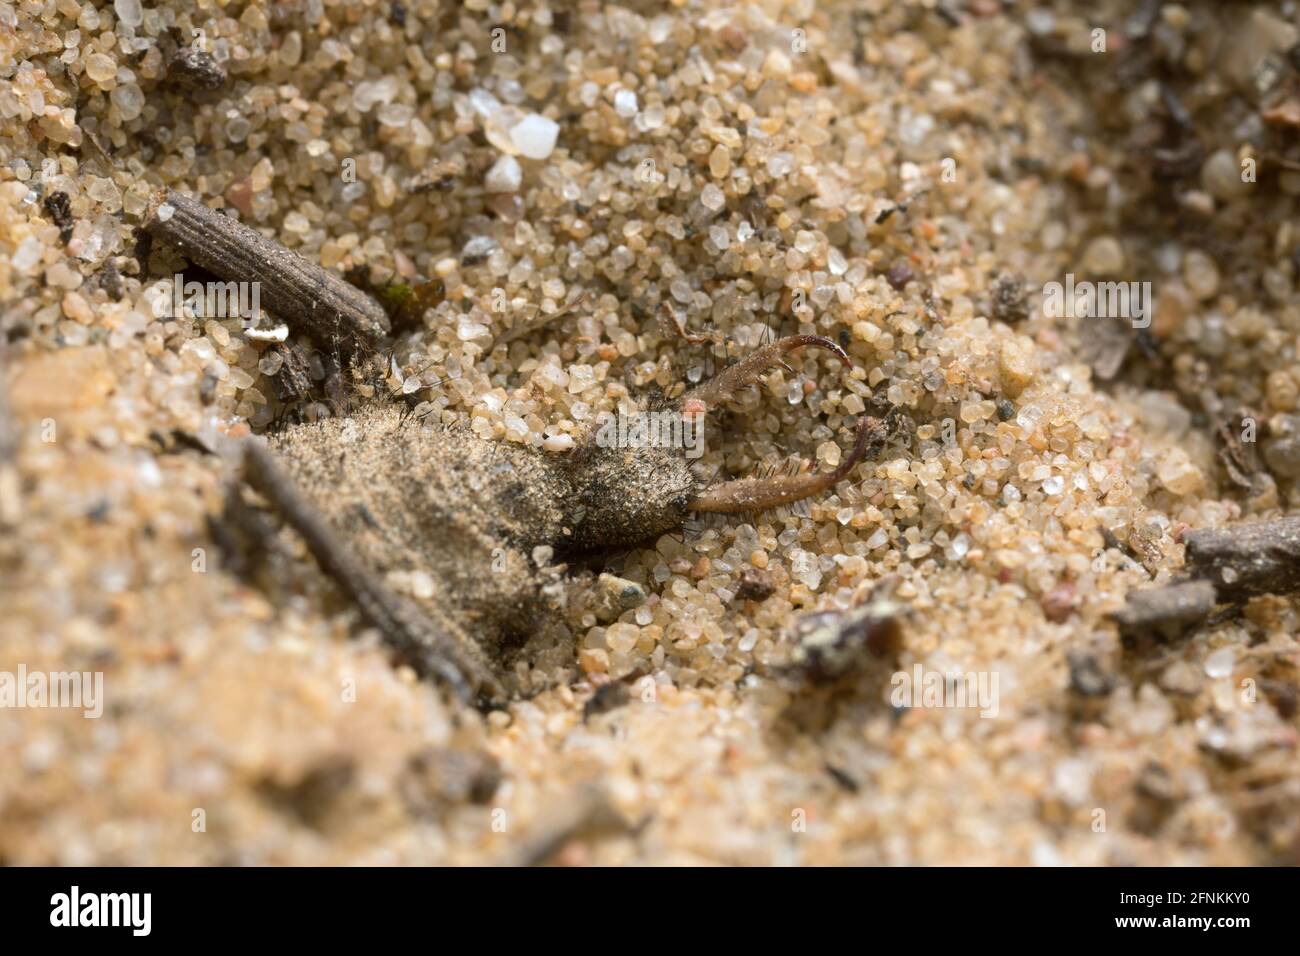 Antlion larva hidden in pit in sand Stock Photo